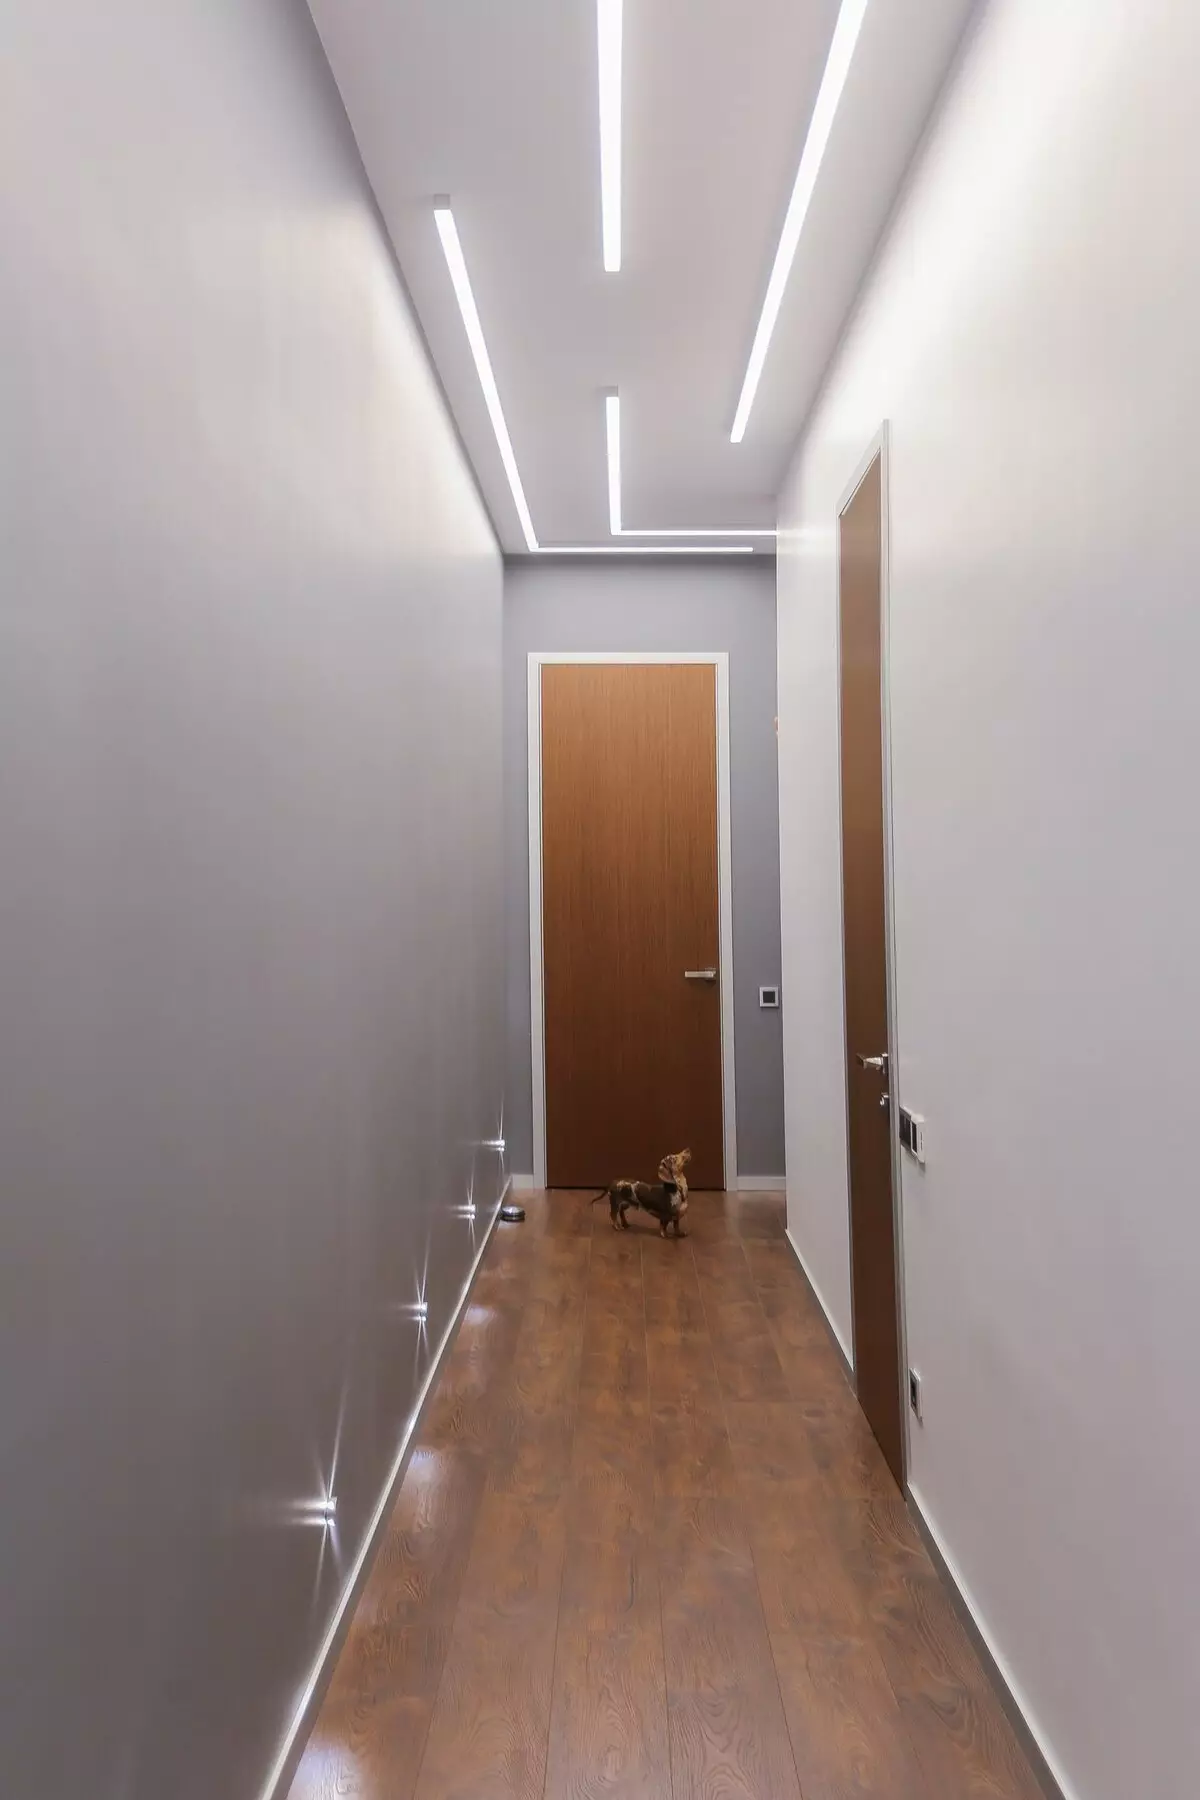 תאורה במסדרון (63 תמונות): אור במסדרון הדירה עם תקרה מתיחה, תאורה הרצפה עם חיישן תנועה תאורה לילה. איך לארגן תאורה במסדרון צר ארוך עם מסדרון? עיצוב מודרני בבית 9092_16